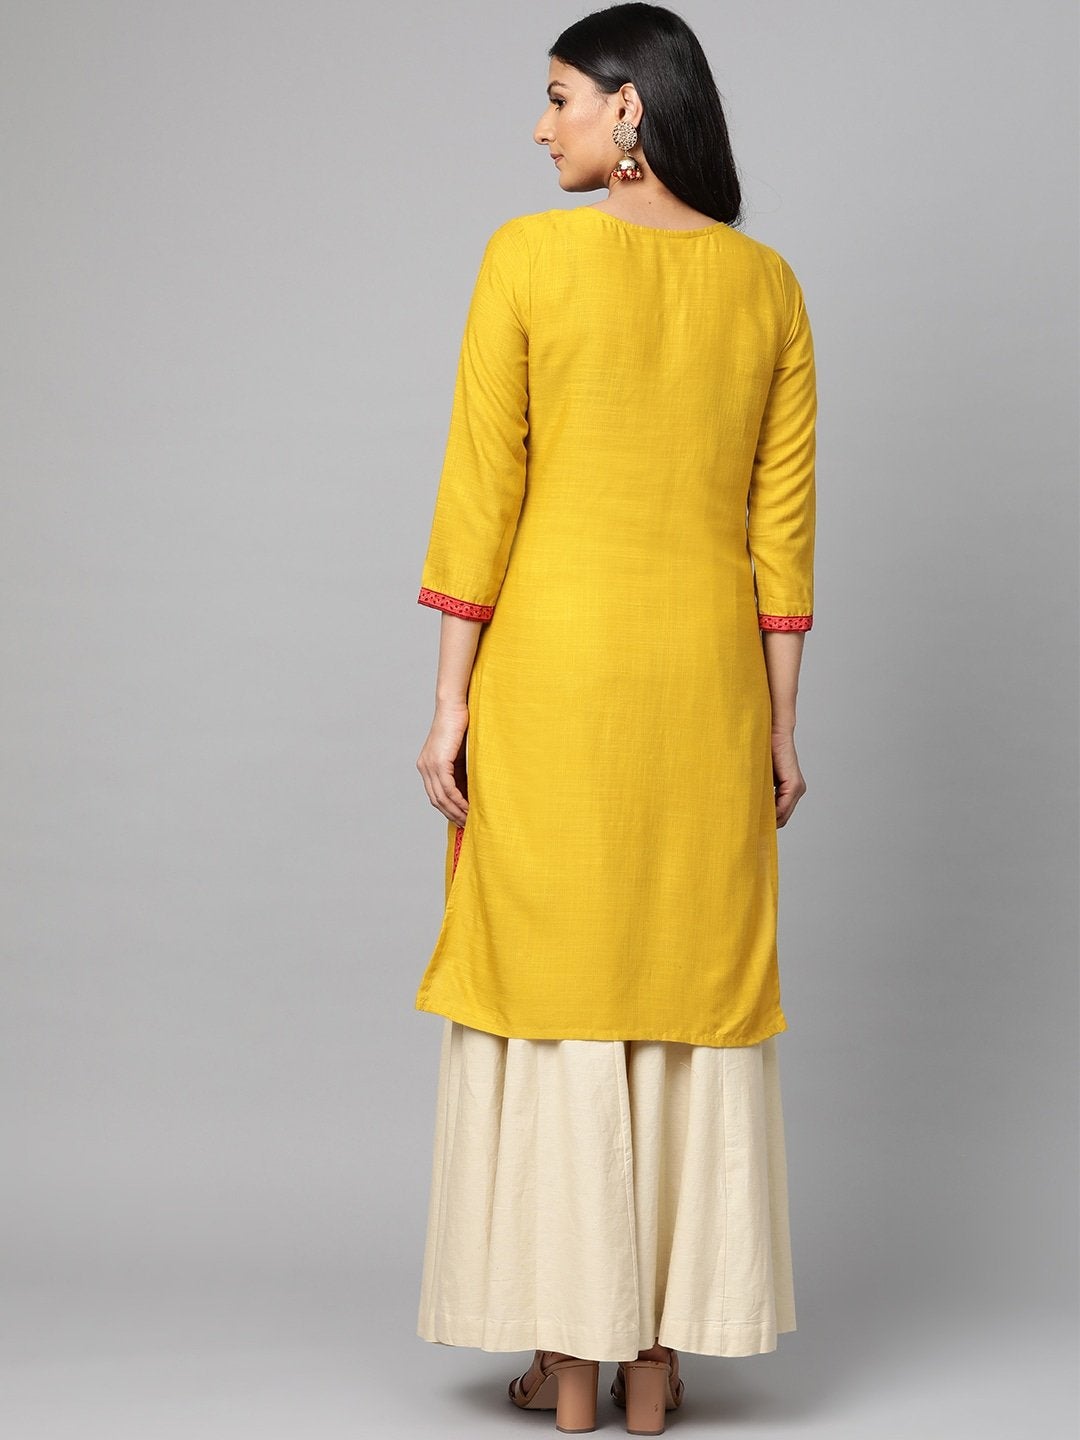 Women's Mustard Yellow & Pink Yoke Design Straight Kurta - Meeranshi